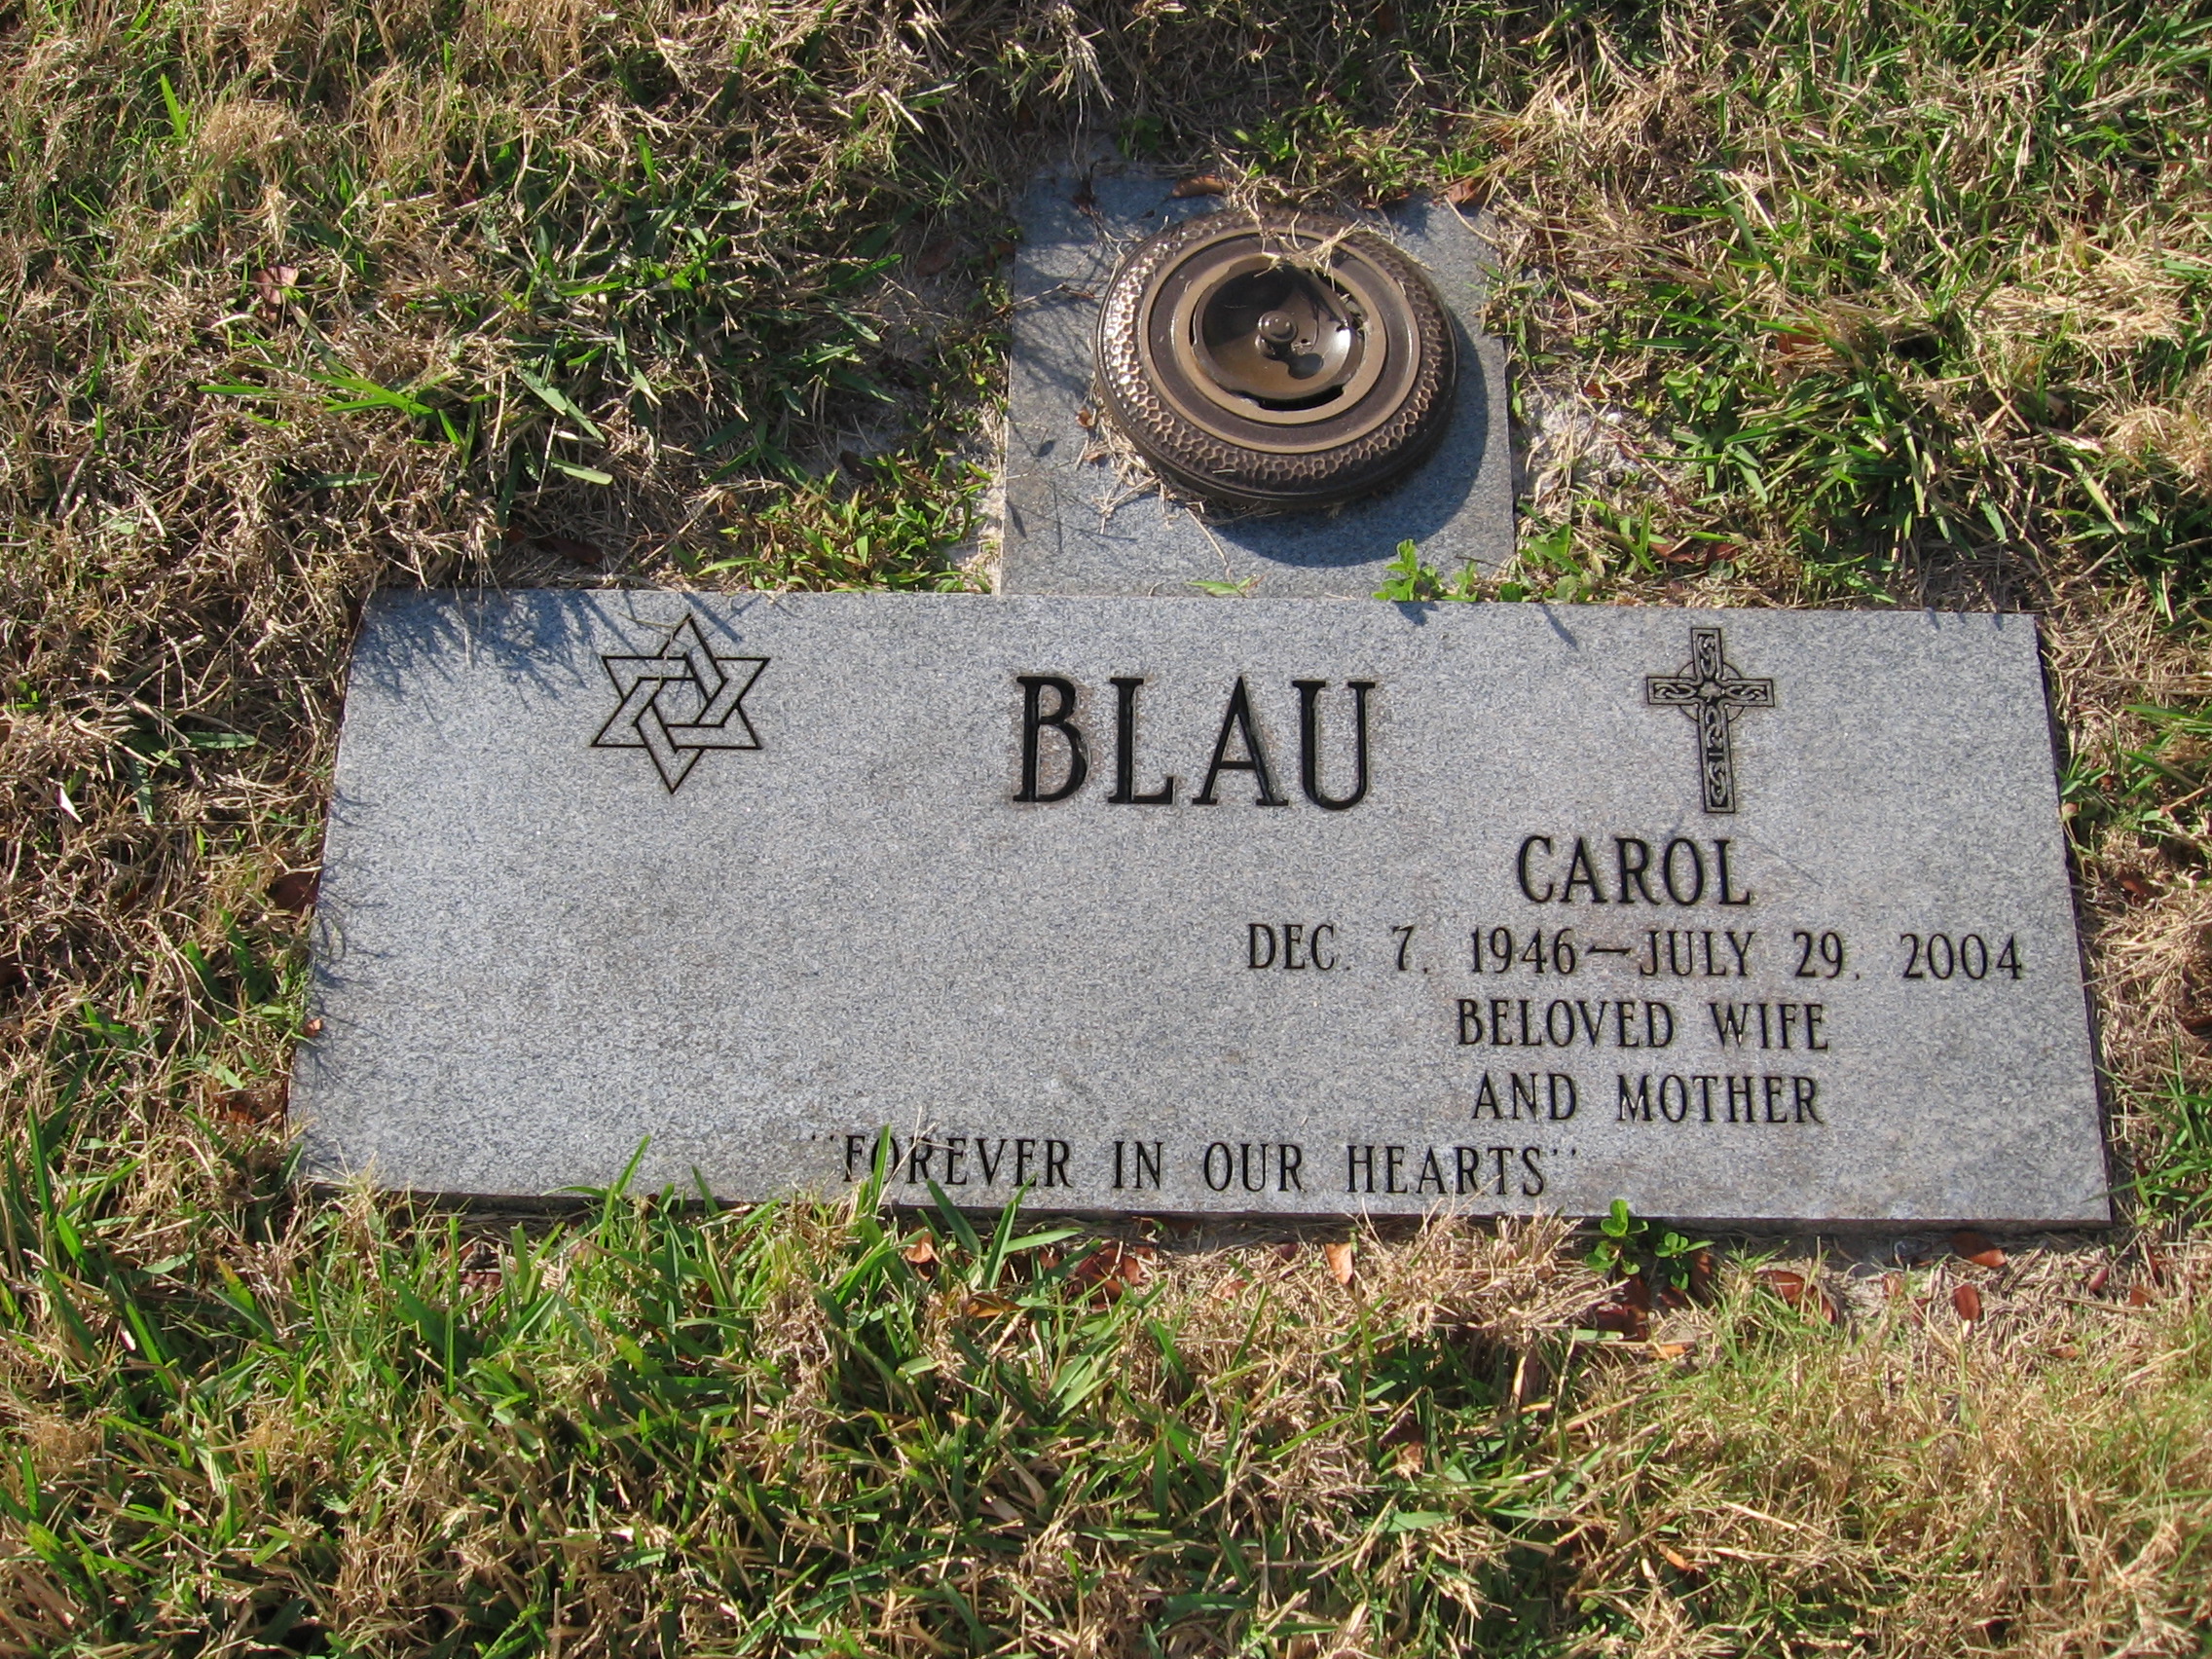 Carol Blau